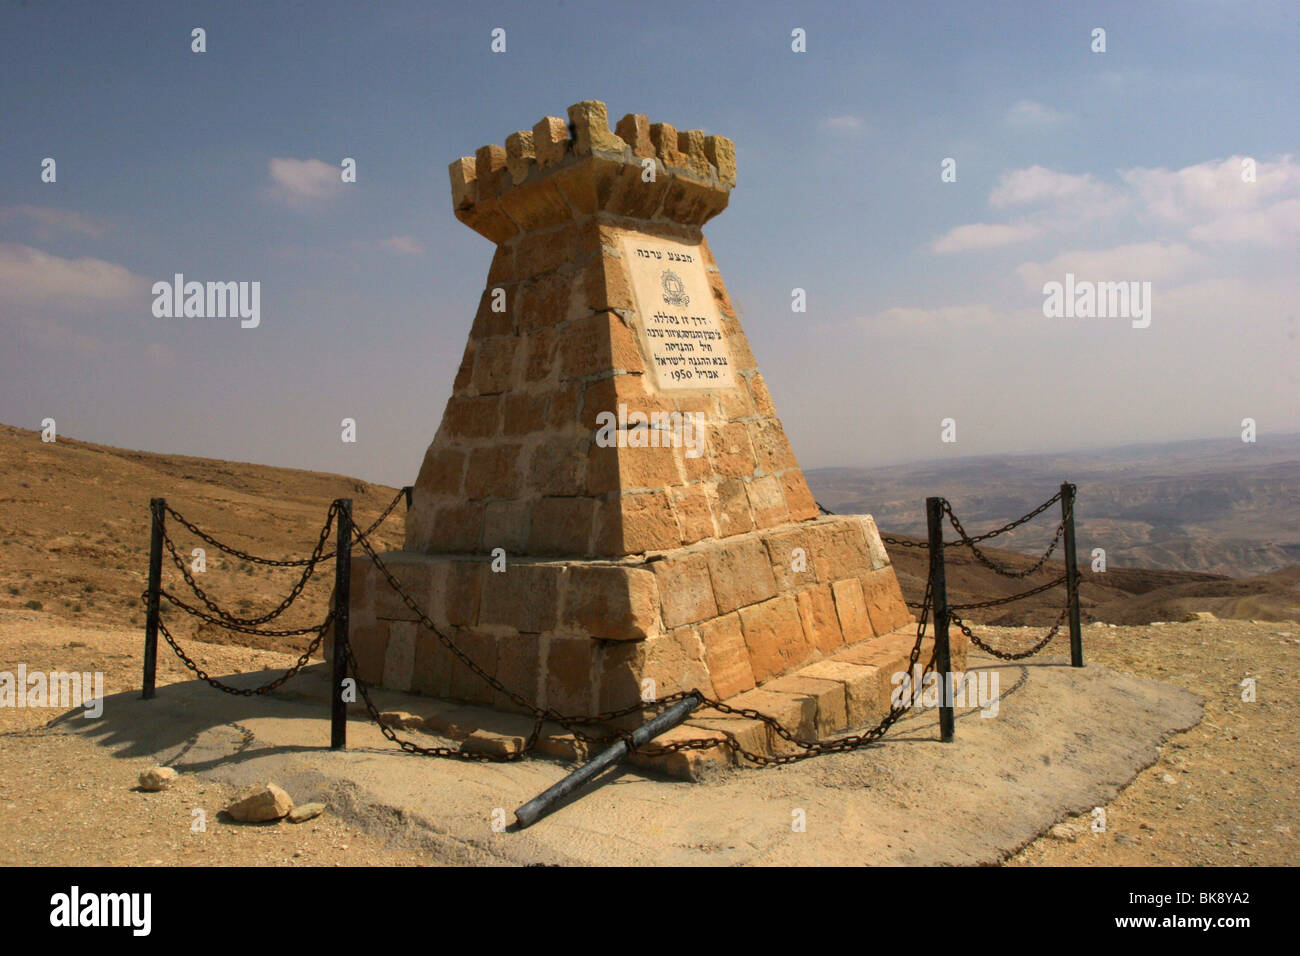 Un monumento per commemorare i soldati del genio che ha spianato la strada per il Mar Morto durante la guerra di indipendenza. Foto Stock